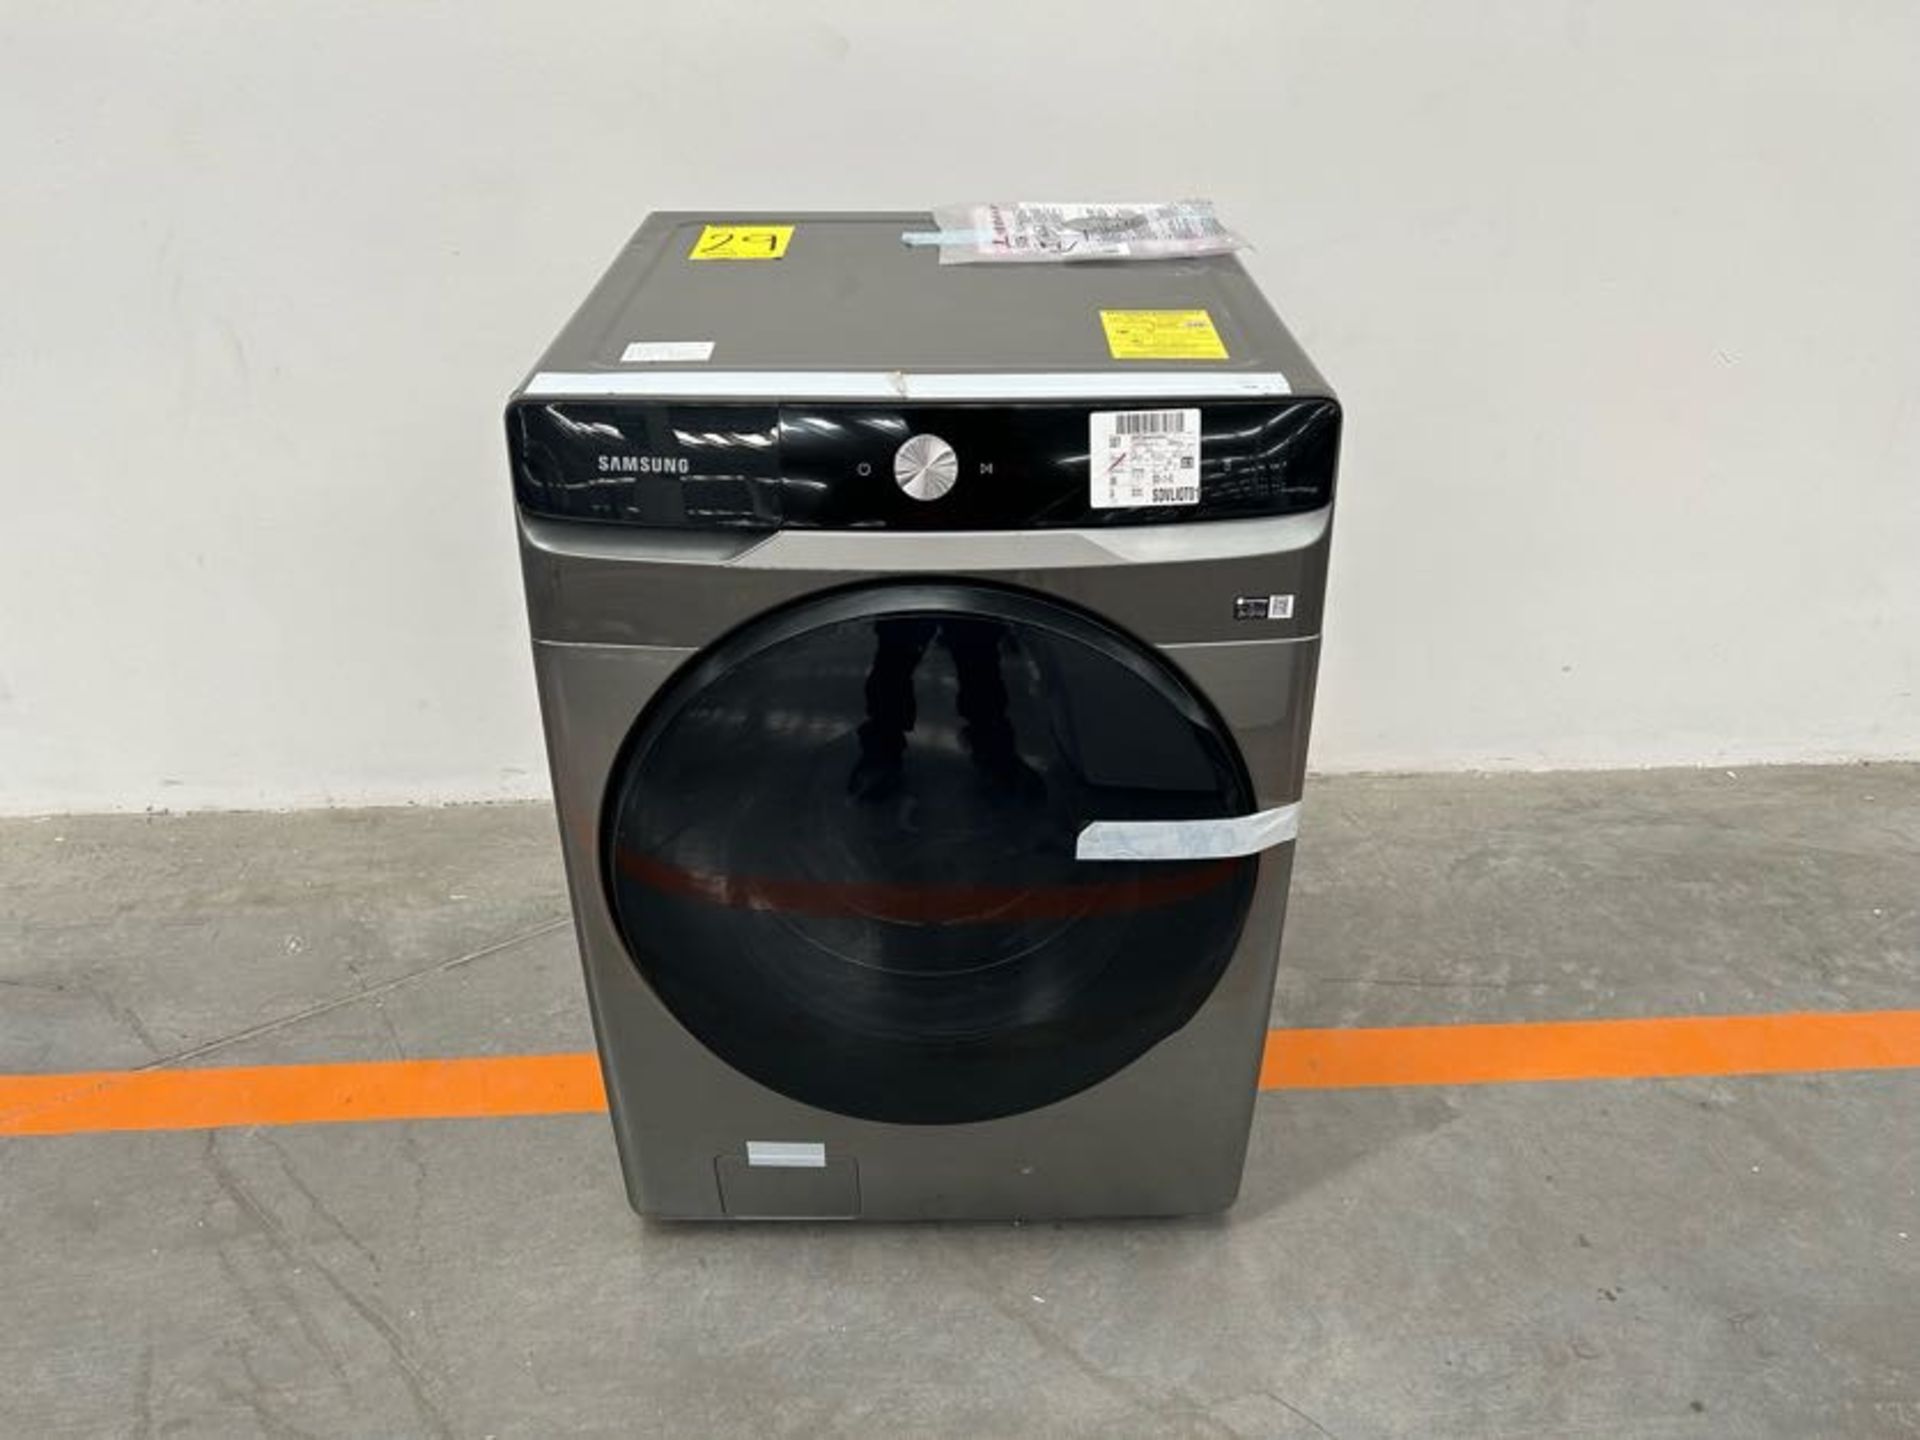 (NUEVO) Lavasecadora de 20 KG Marca SAMSUNG, Modelo WD20T6300GP, Serie 00836, Color GRIS